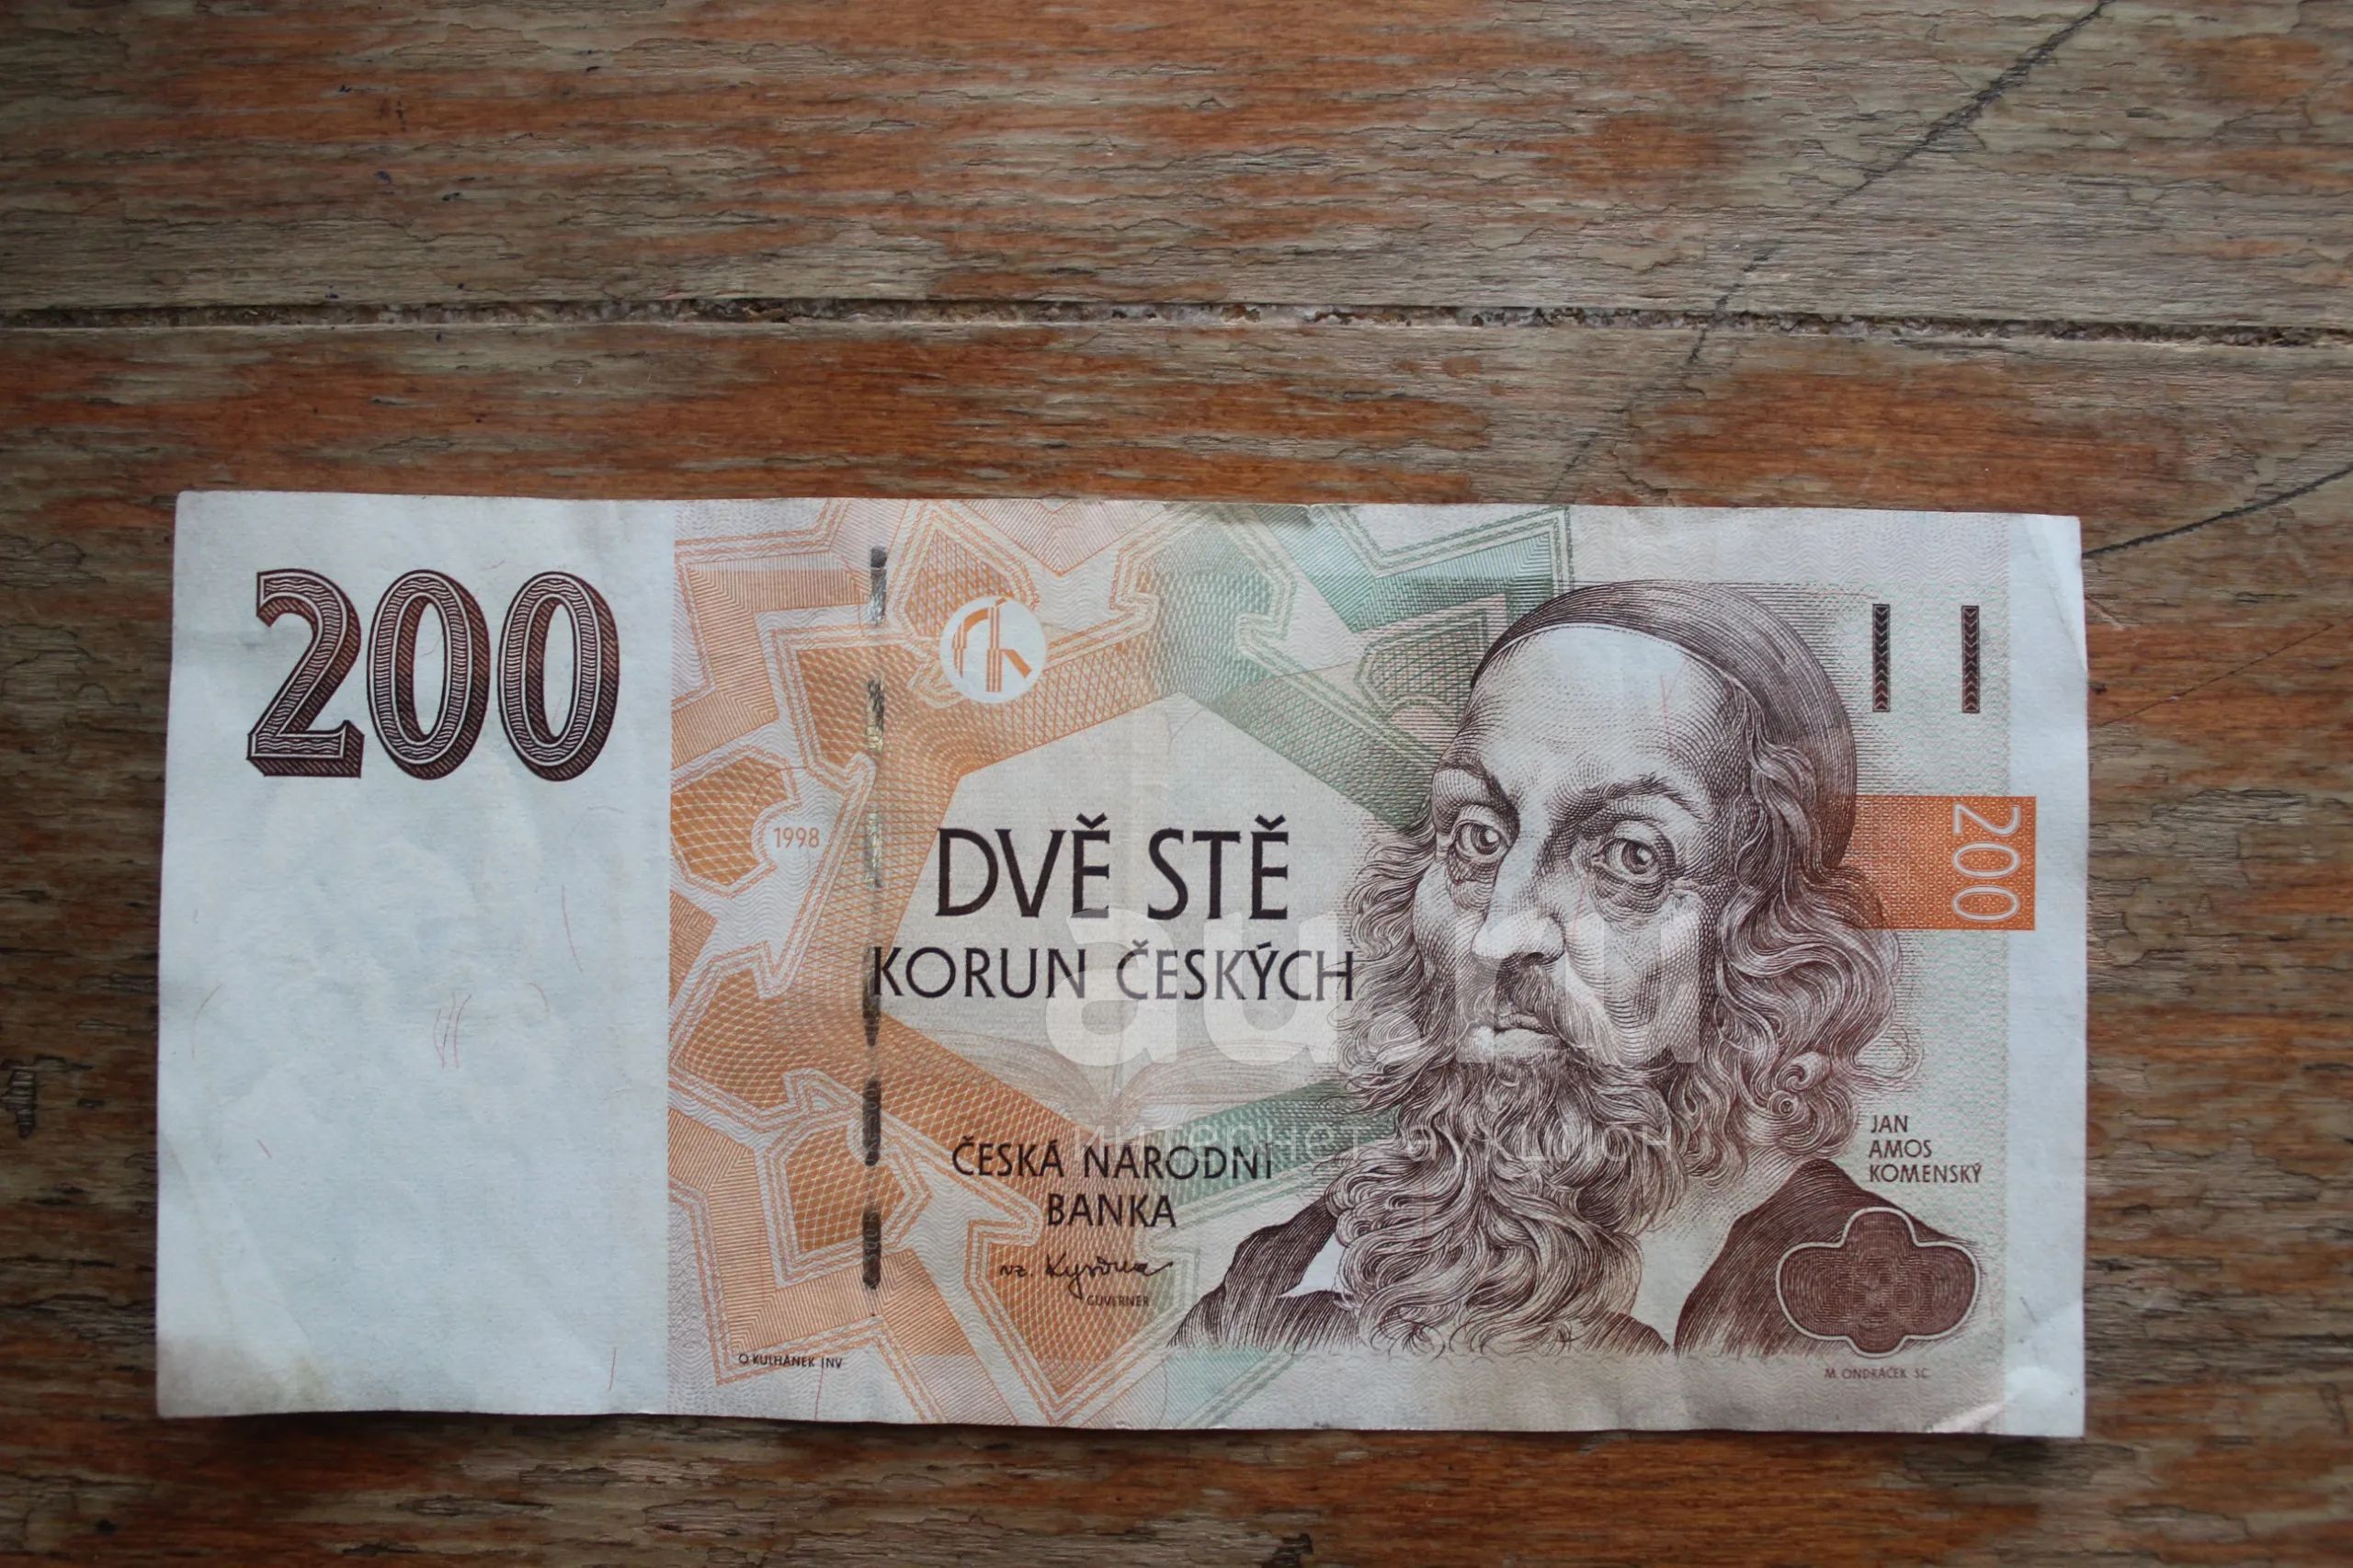 200 кронов в рублях. Деньги 200 korun. Korun ceskych какие деньги. Dva tisice korun в рублях. Как выглядит 200 коруни.